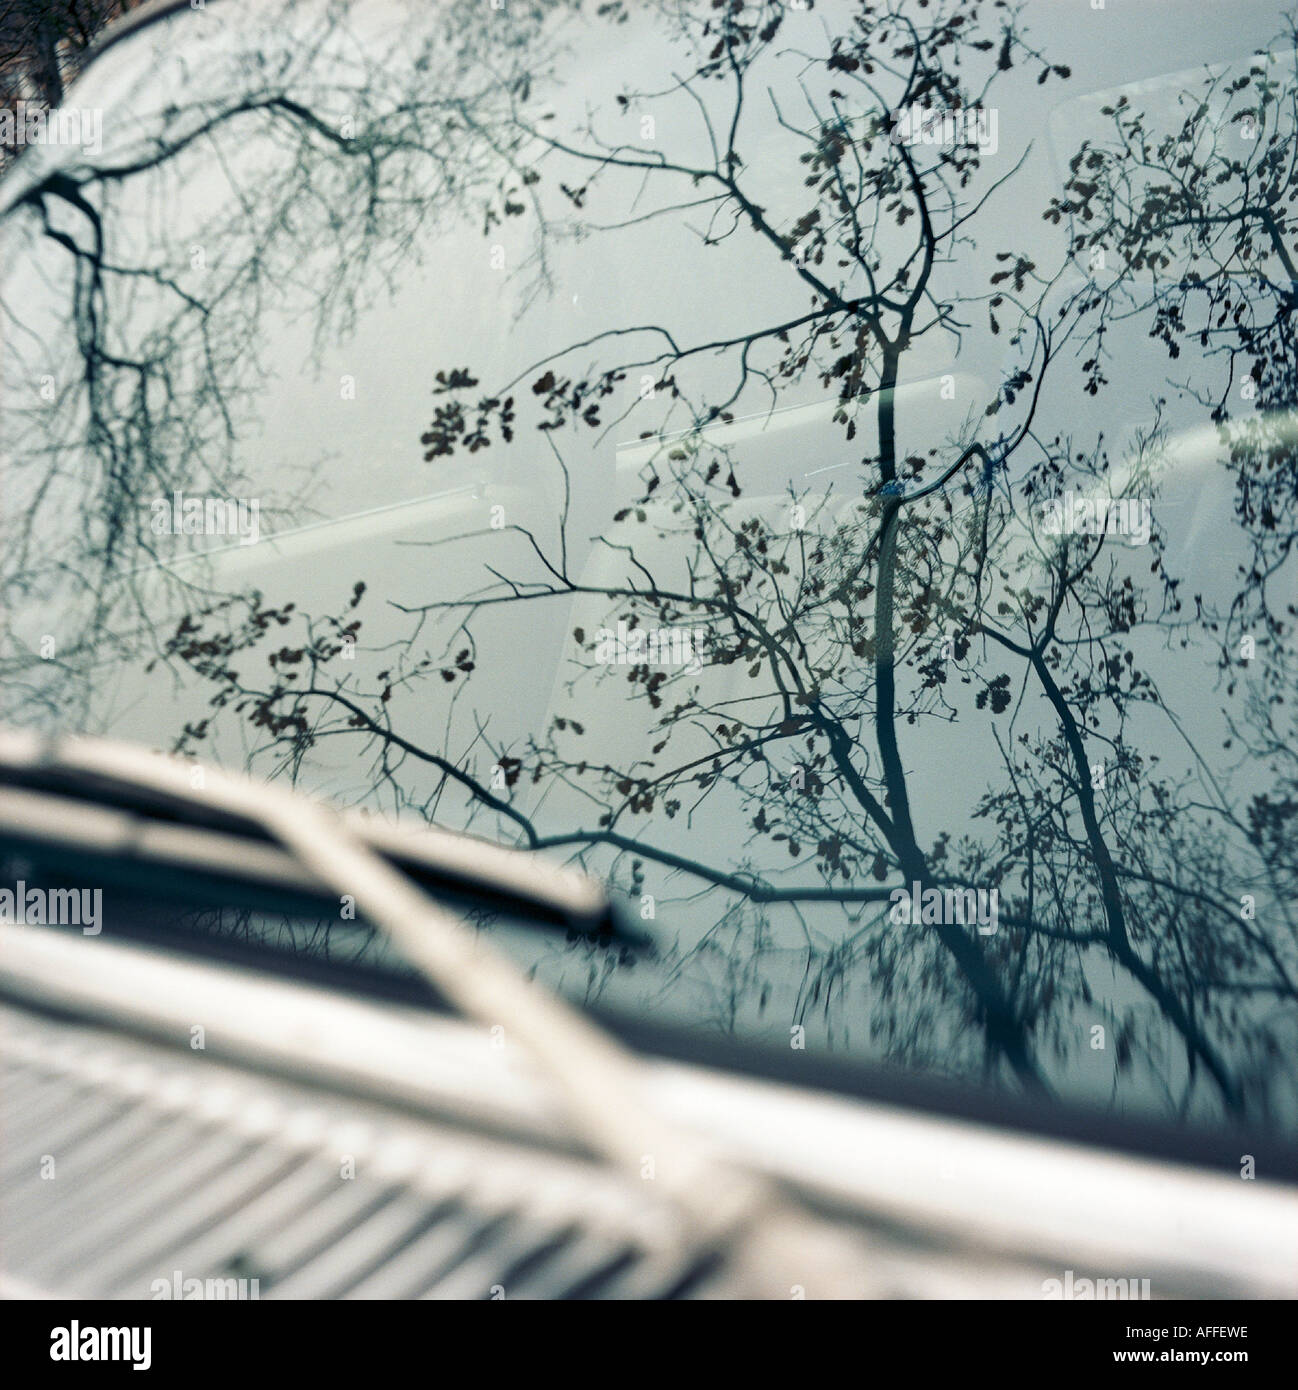 bcvr 50 4126 Winterliche Zweige spiegeln sich in einer Windschutzscheibe Stock Photo